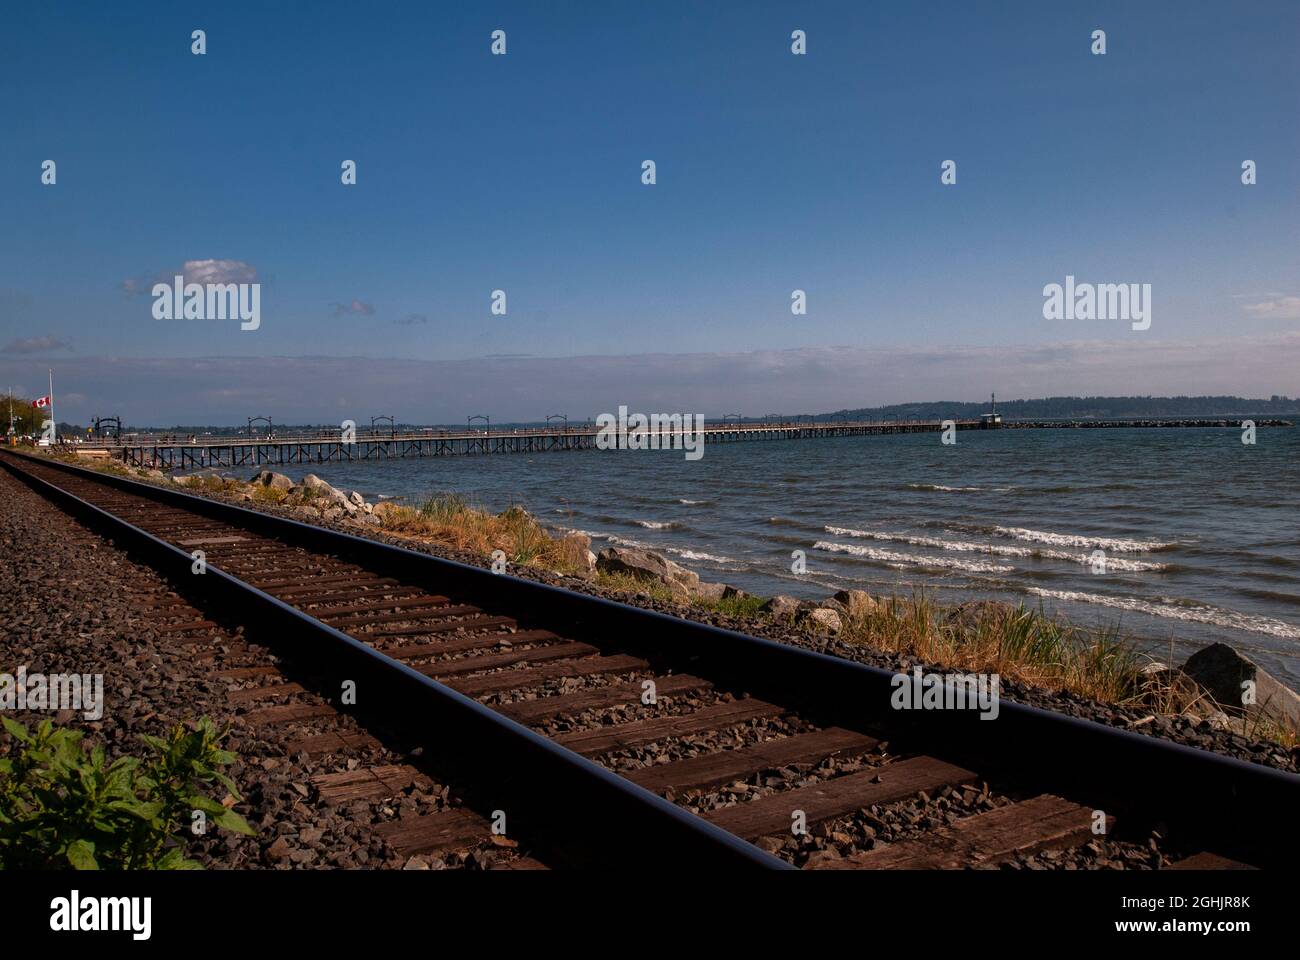 Train tracks running through White Rock, British Columbia, Canada Stock Photo